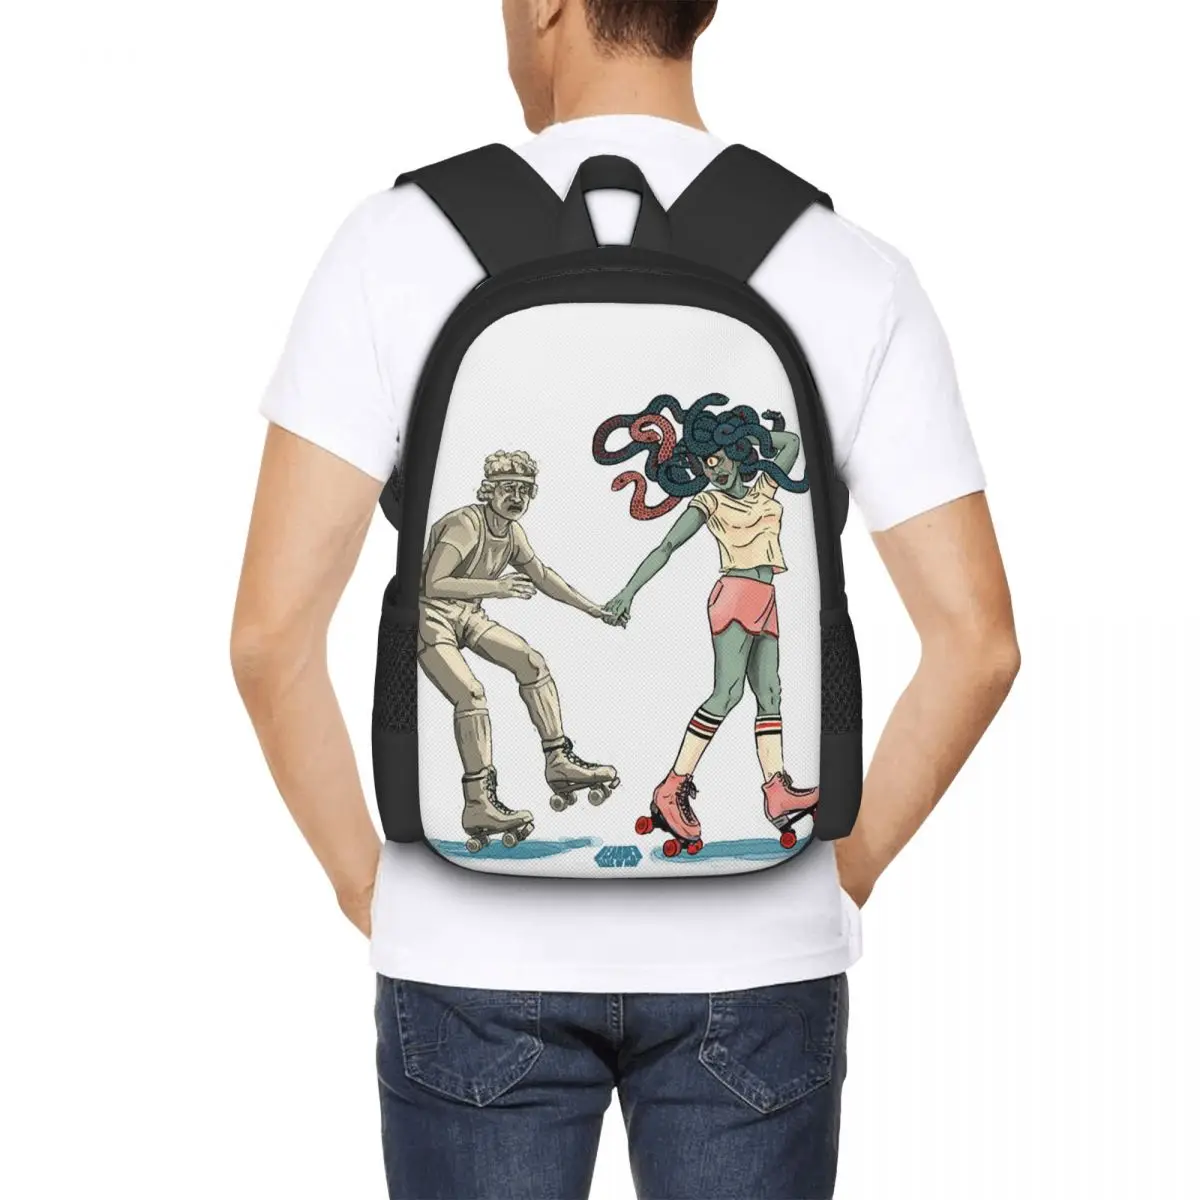 Roller Disco Medusa Backpack for Girls Boys Travel RucksackBackpacks for Teenage school bag